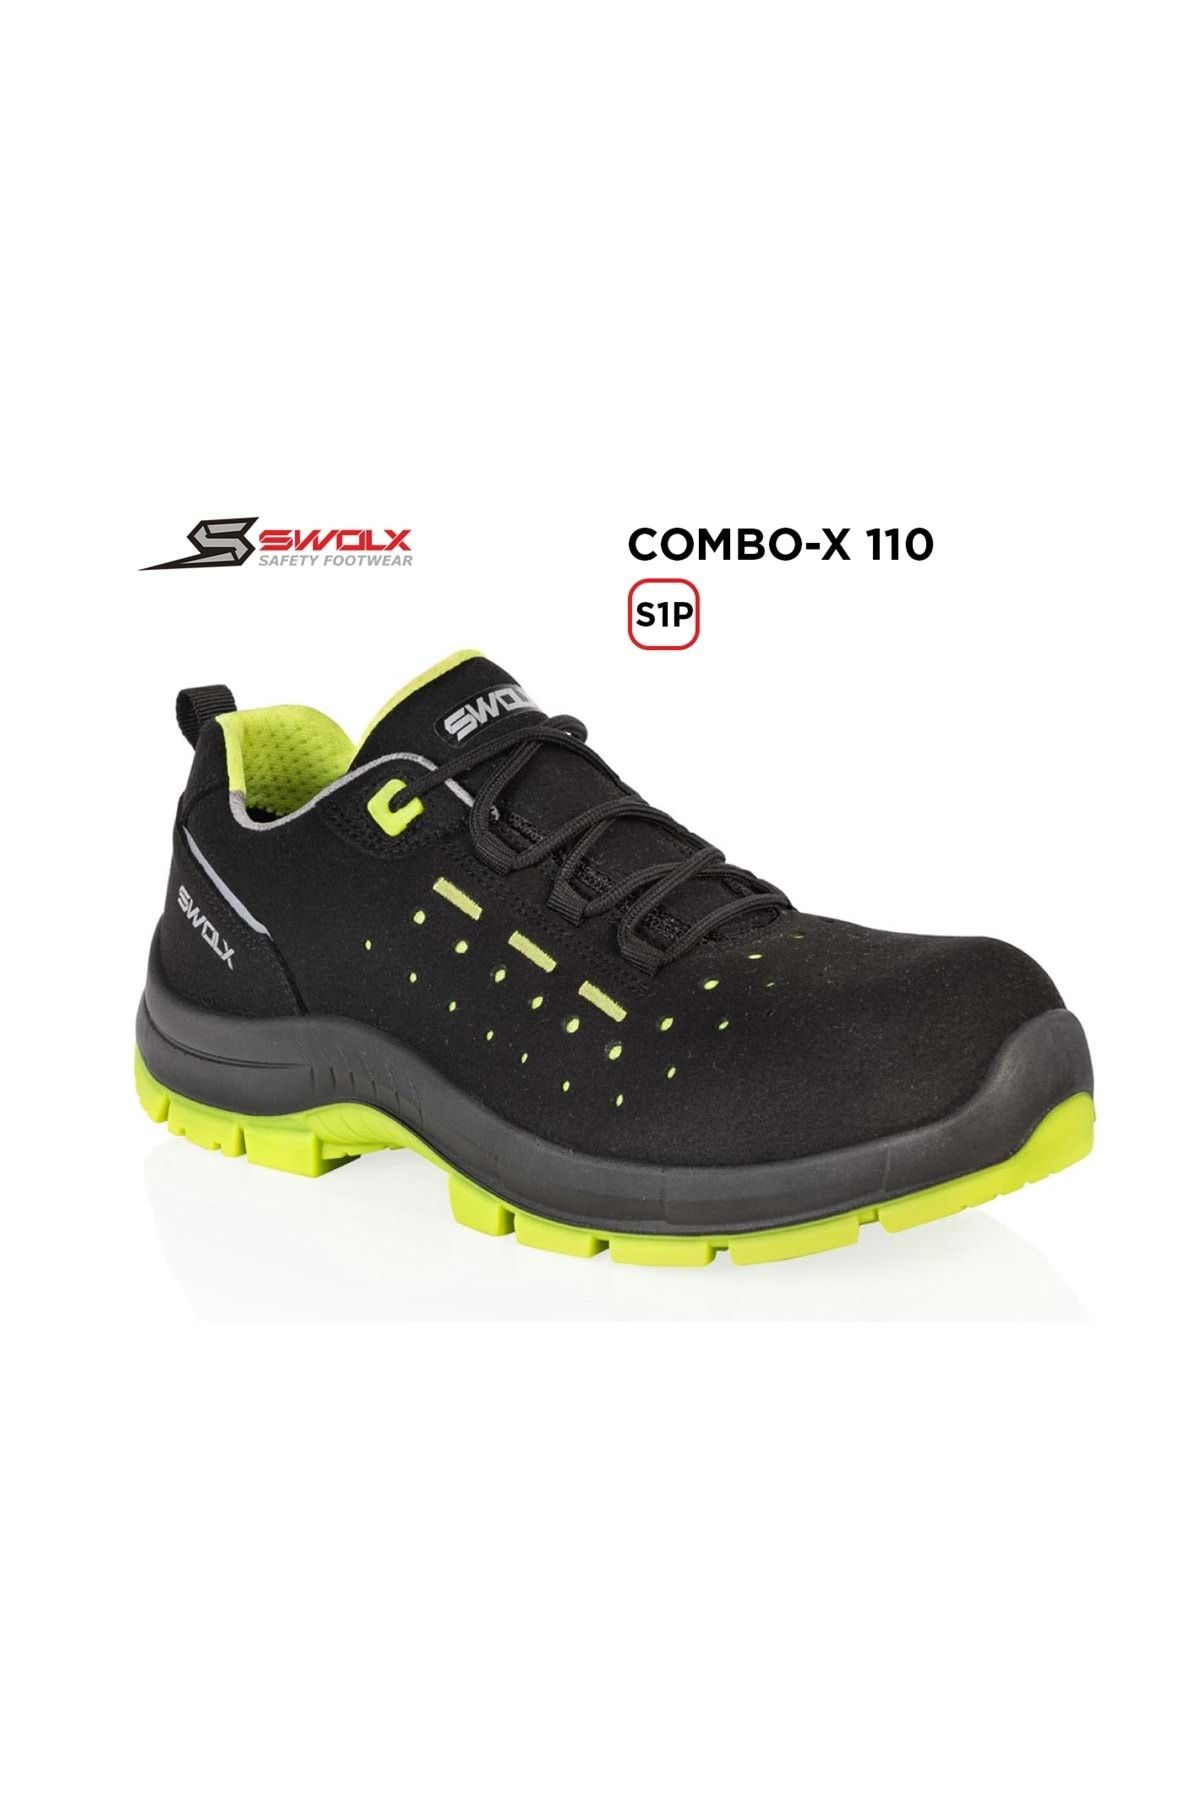 Swolx Iş Ayakkabısı - Combo-x 110 S1p Elektrikçi